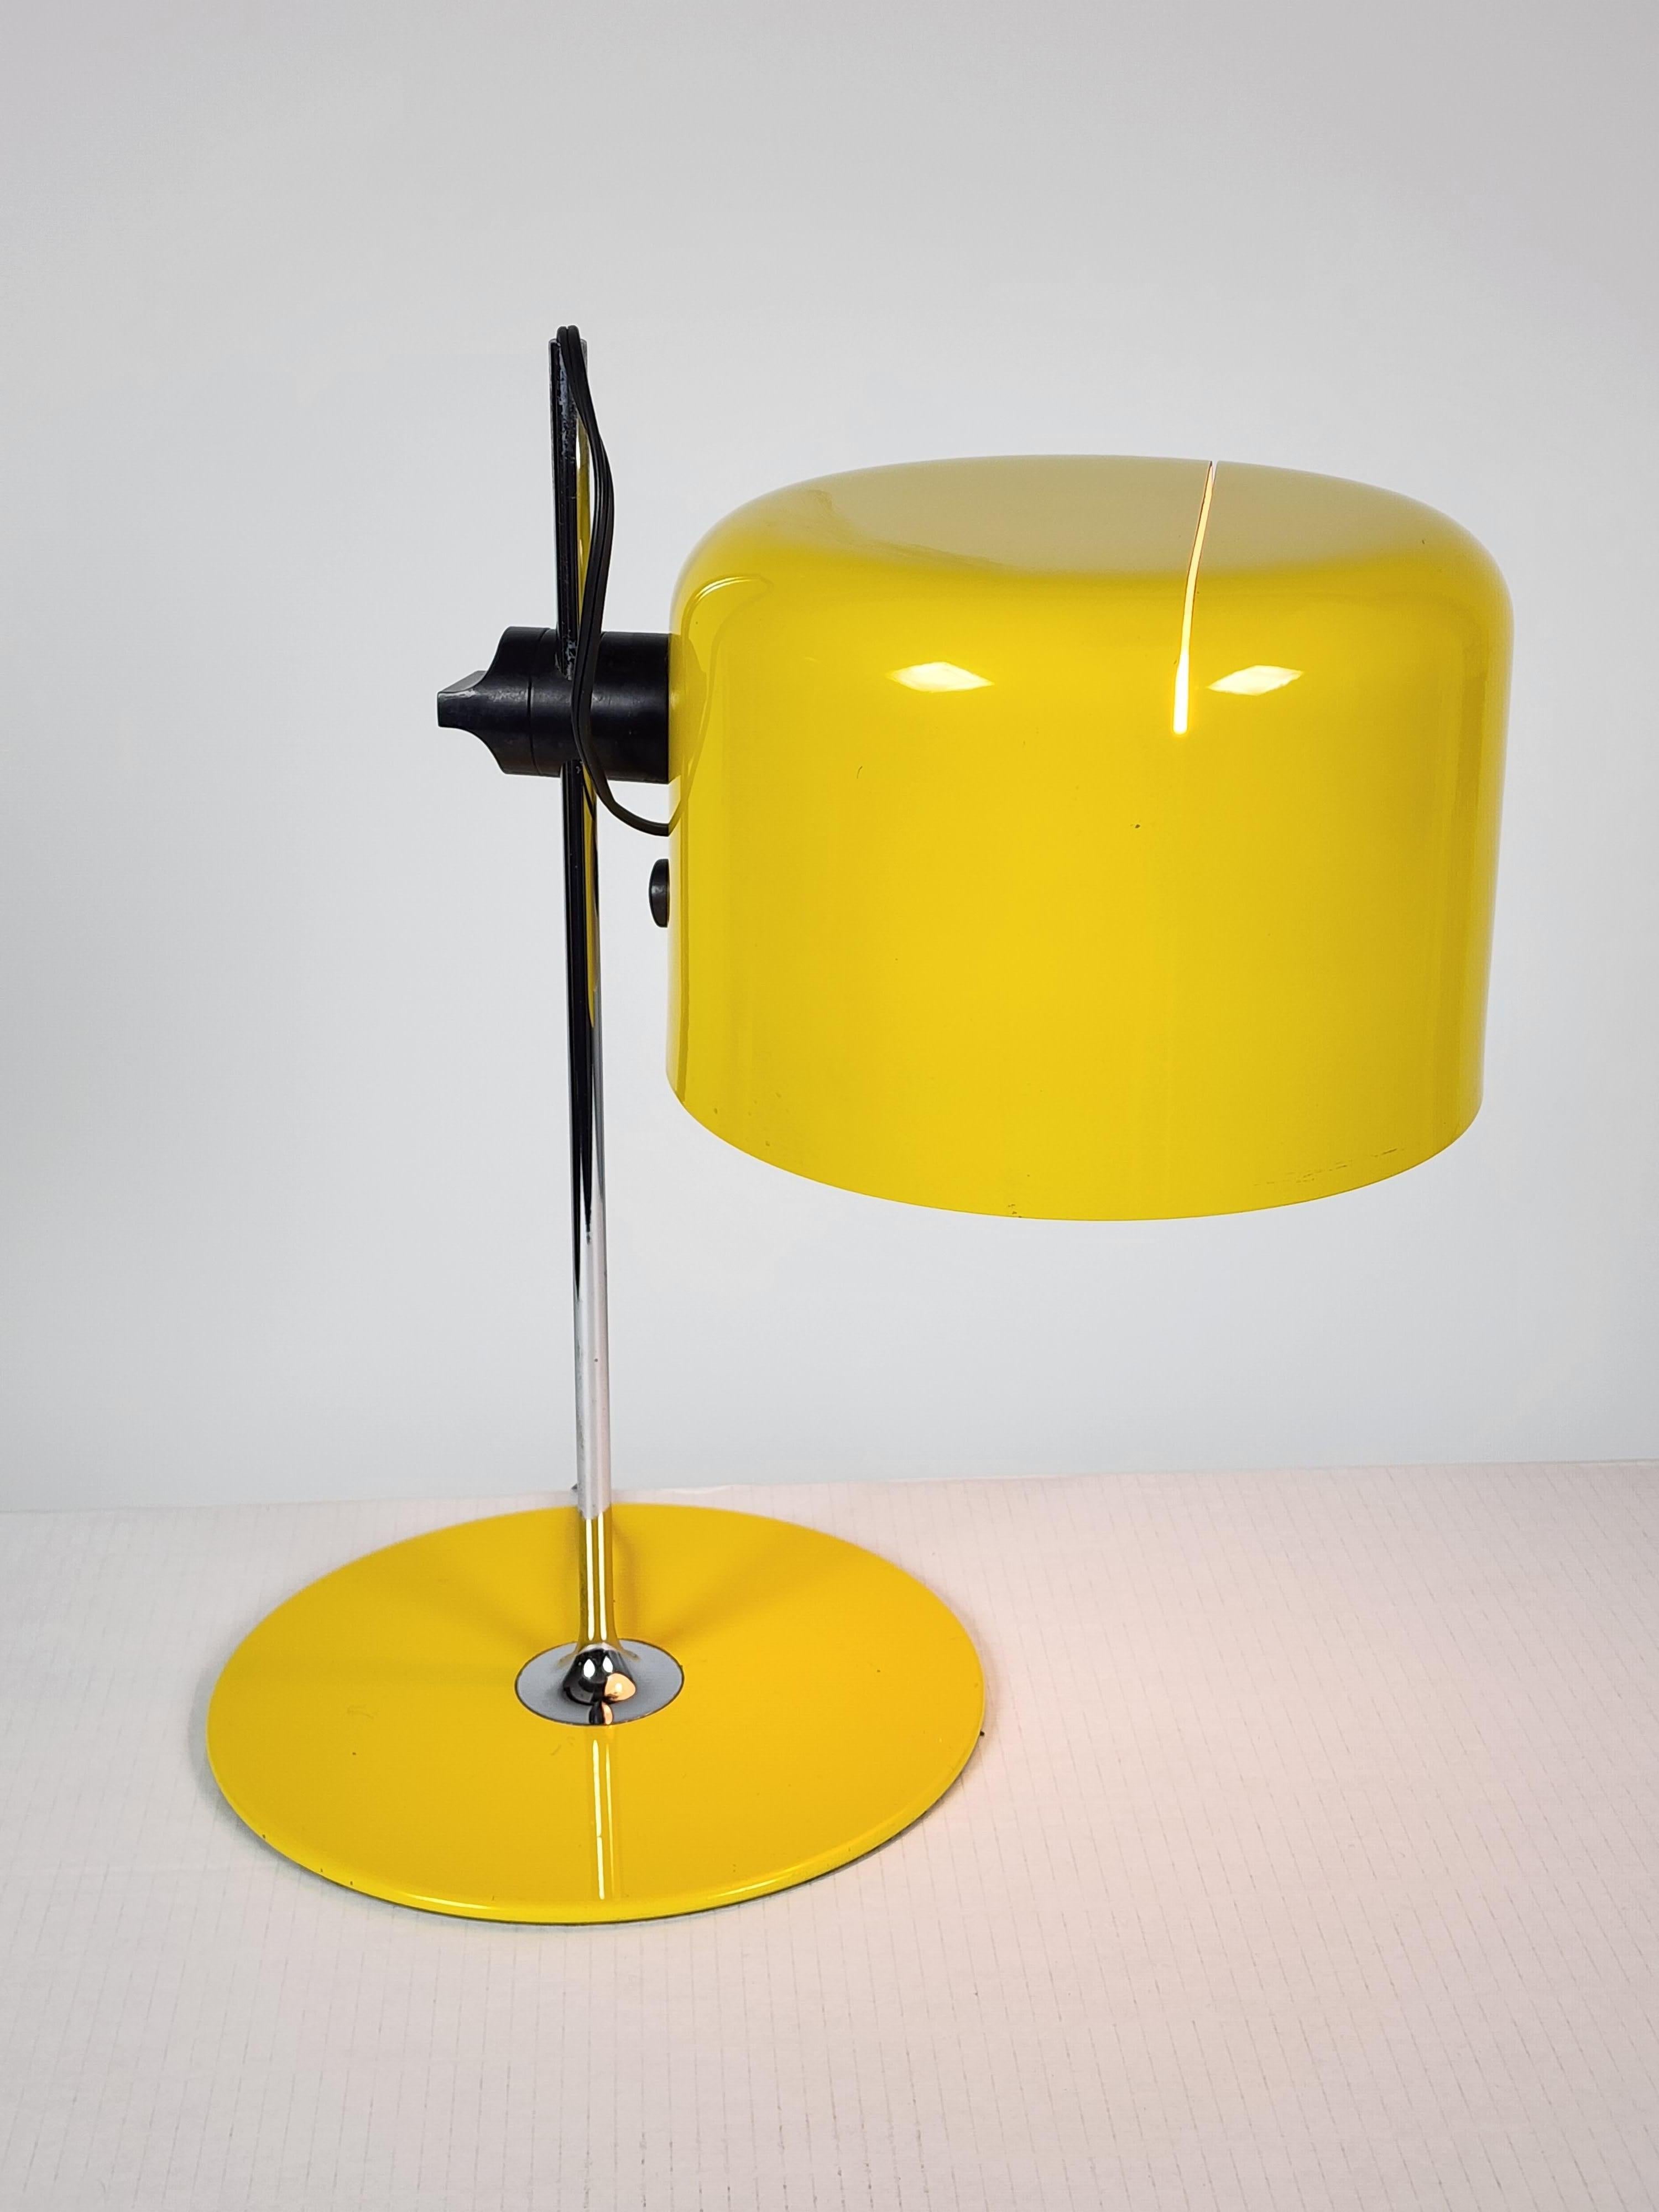 1967  Frühes Modell 2202  ''Coupe''  tischlampe von Joe Colombo  für Guiseppe Ostuni, Inhaber von  Oluce .

Klassischer geschlitzter Farbton in leuchtendem Gelb  glänzende Oberfläche  . 

Gut gemacht mit  solide  Struktur und Hardware .